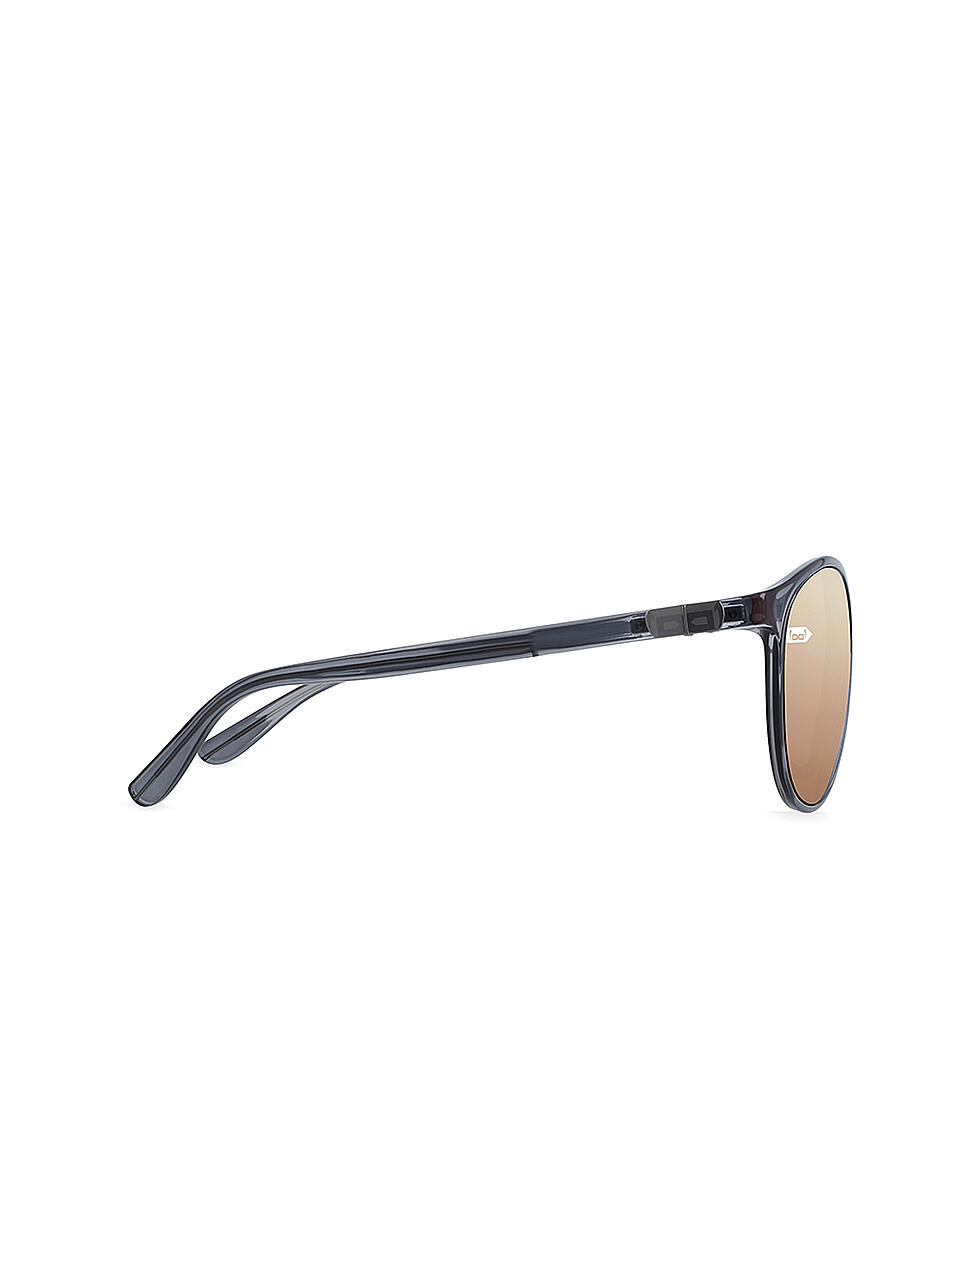 GLORYFY | Herren Sonnenbrille Gi26 Kingston F3 | grau